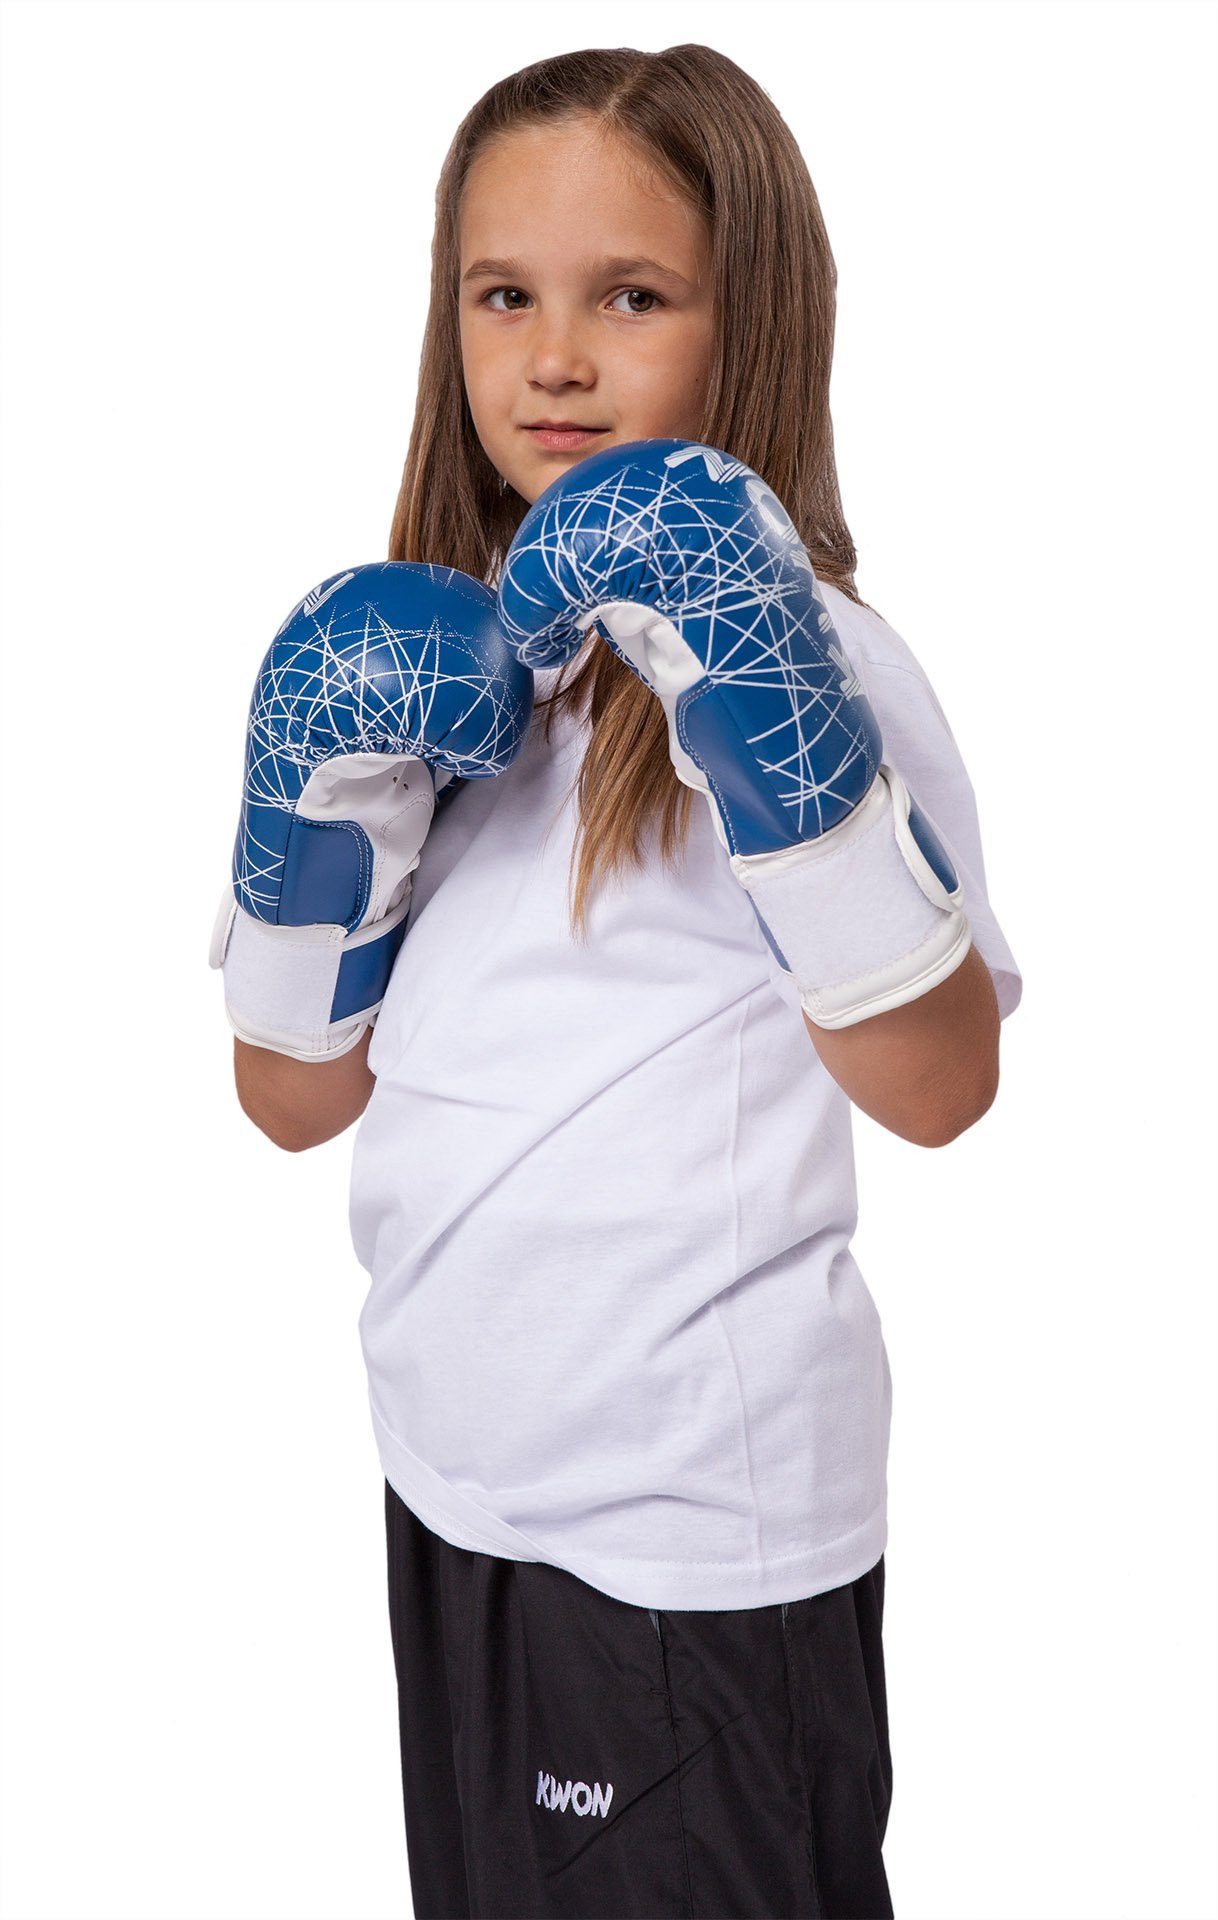 KWON Boxhandschuhe Kinder pink blau 6 Kickboxen Box-Handschuhe Kinderboxhandschuhe), MMA Boxen Unzen, neon Qualität klein, hochwertige Kids (small